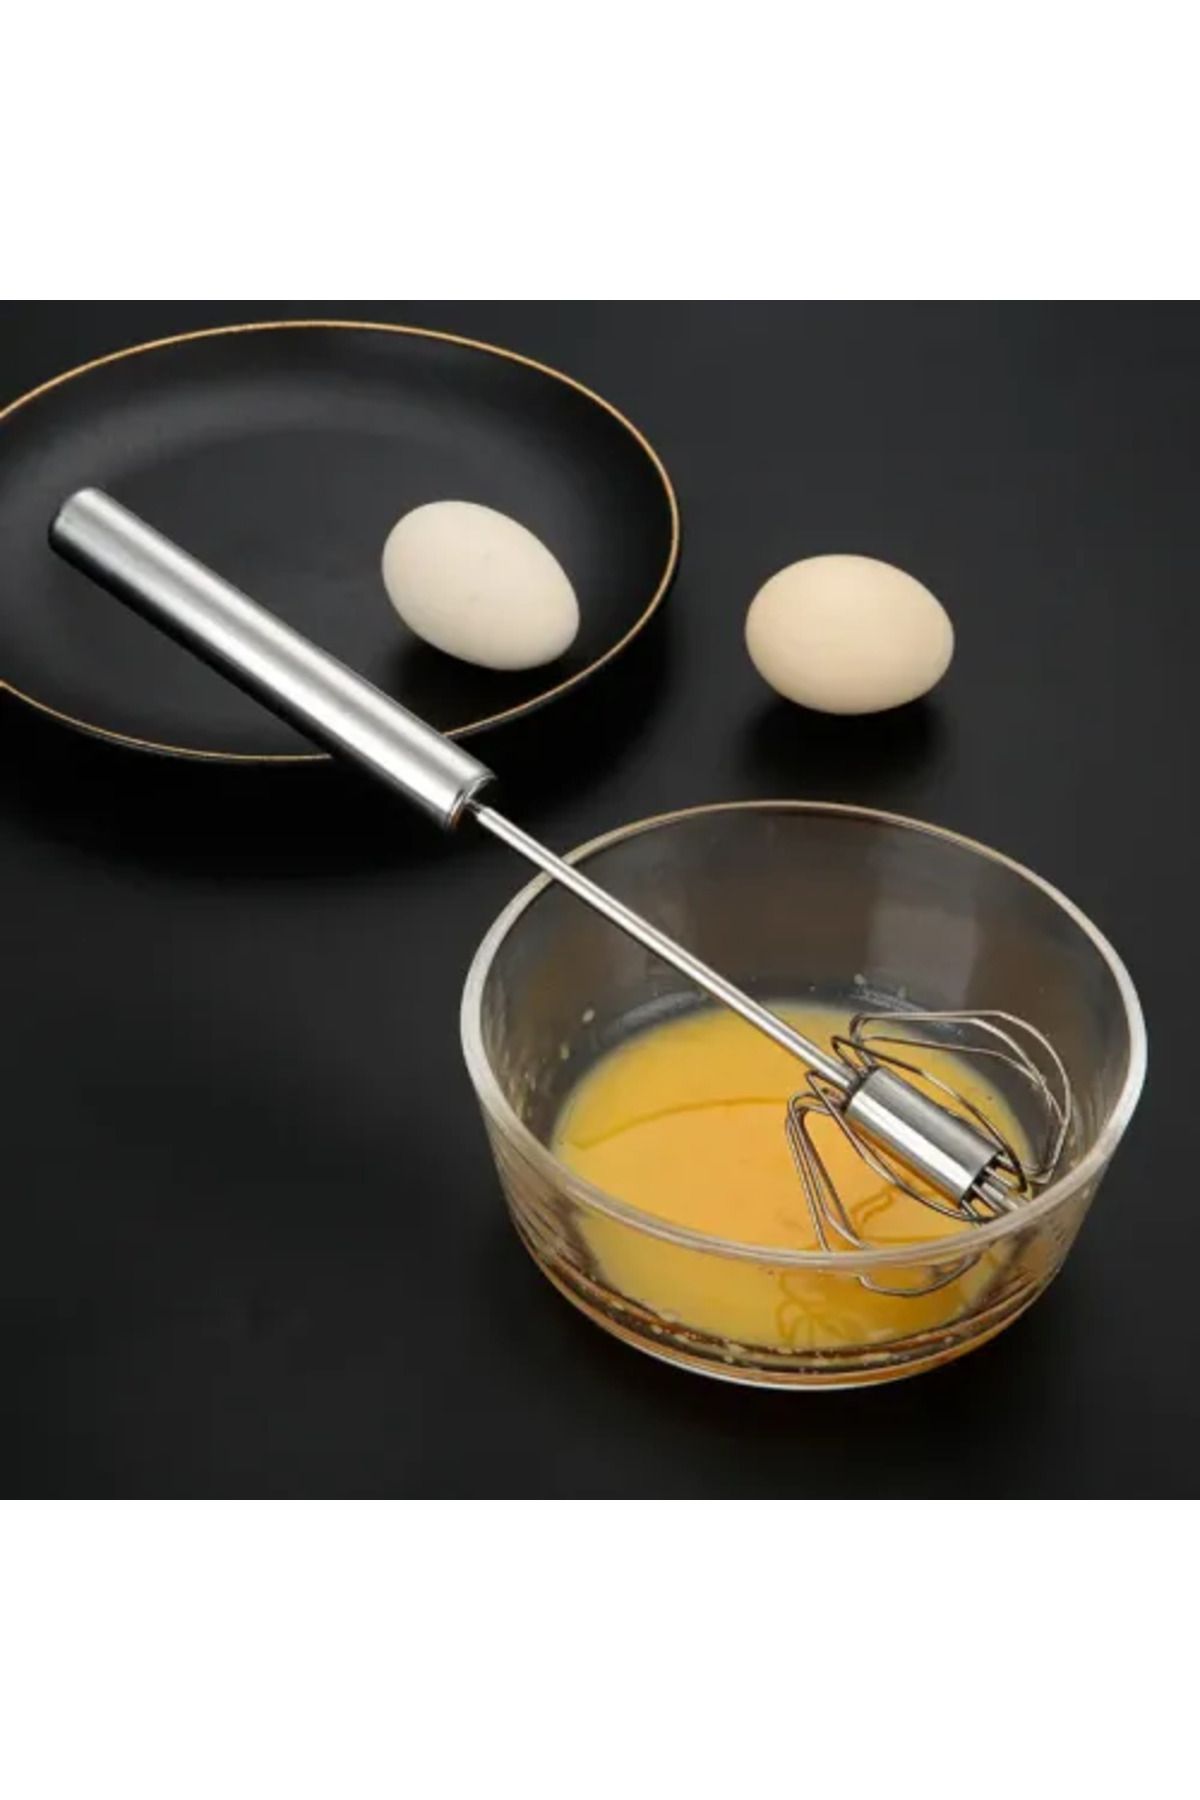 Runaway Bas Çek Mikser Paslanmaz Çelik El Çırpıcısı Manuel Yumurta Çırpıcı Pasta Kek Çırpma Teli Gırgır Çırp